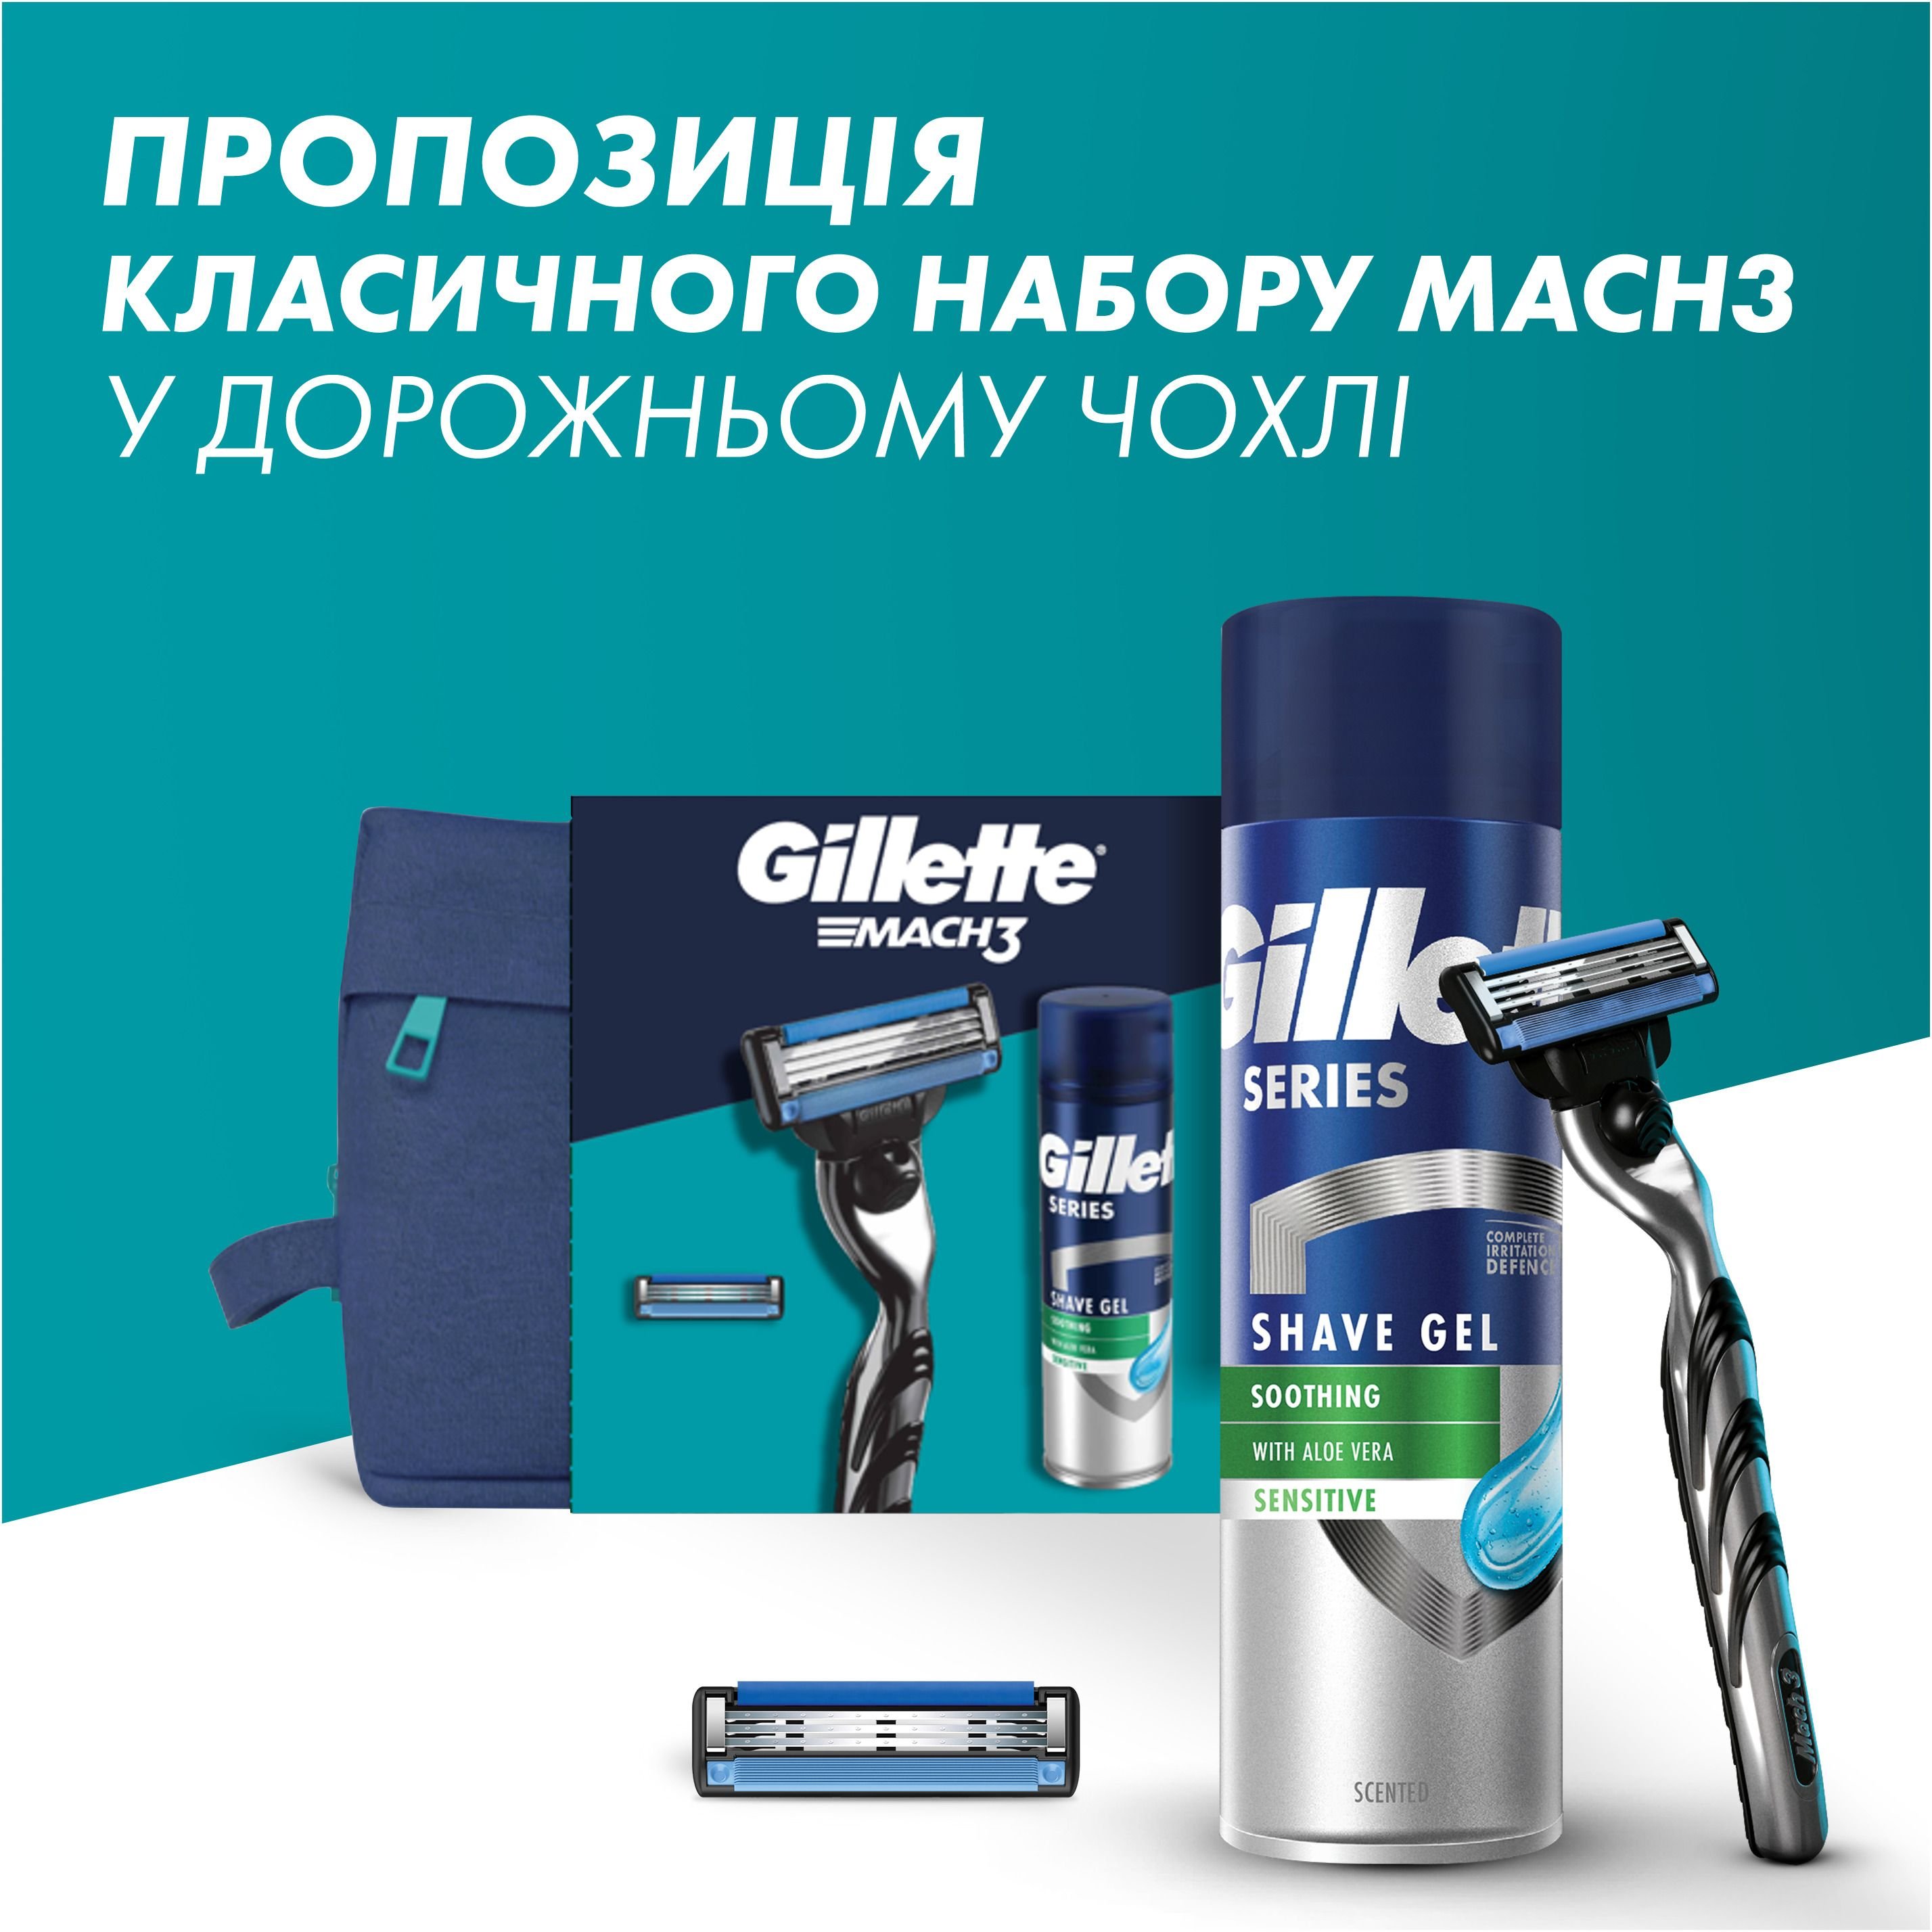 Подарочный набор для мужчин Gillette Mach3: бритва + сменные катриджи для бритья 2 шт. + гель для бритья + косметичка - фото 7